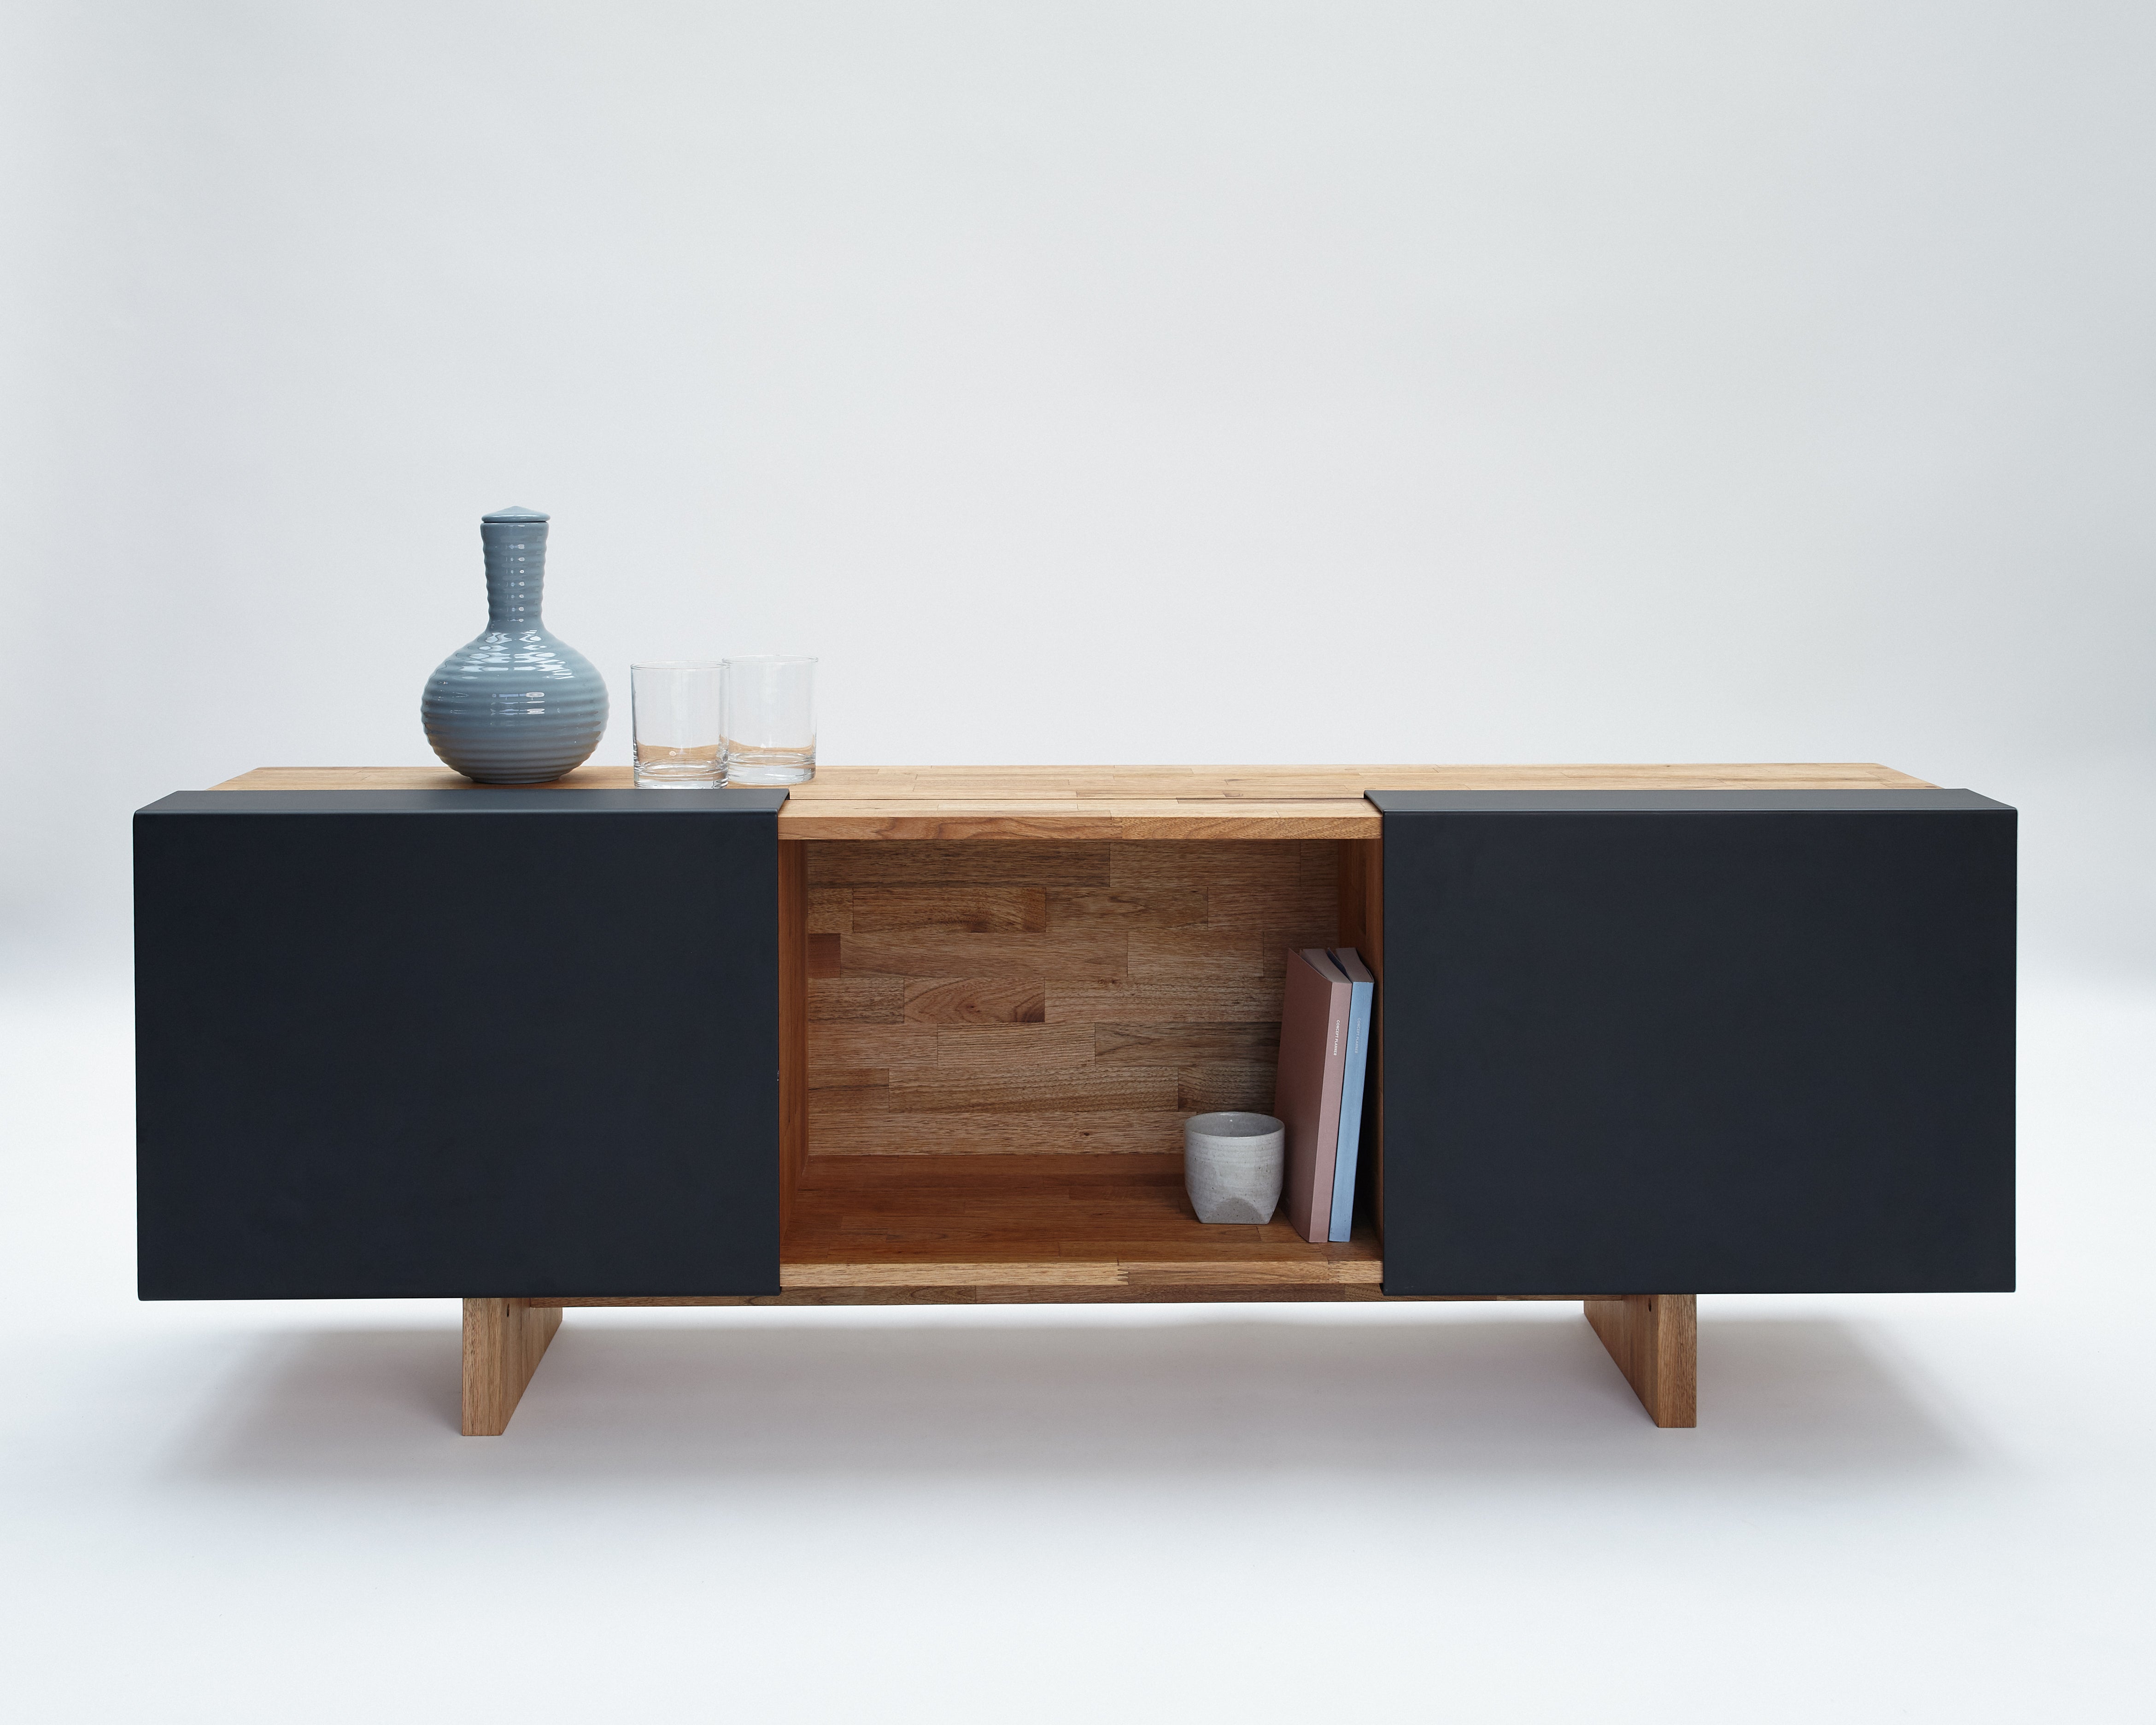 3X Shelf with Base- English Walnut, Matte Black Panels